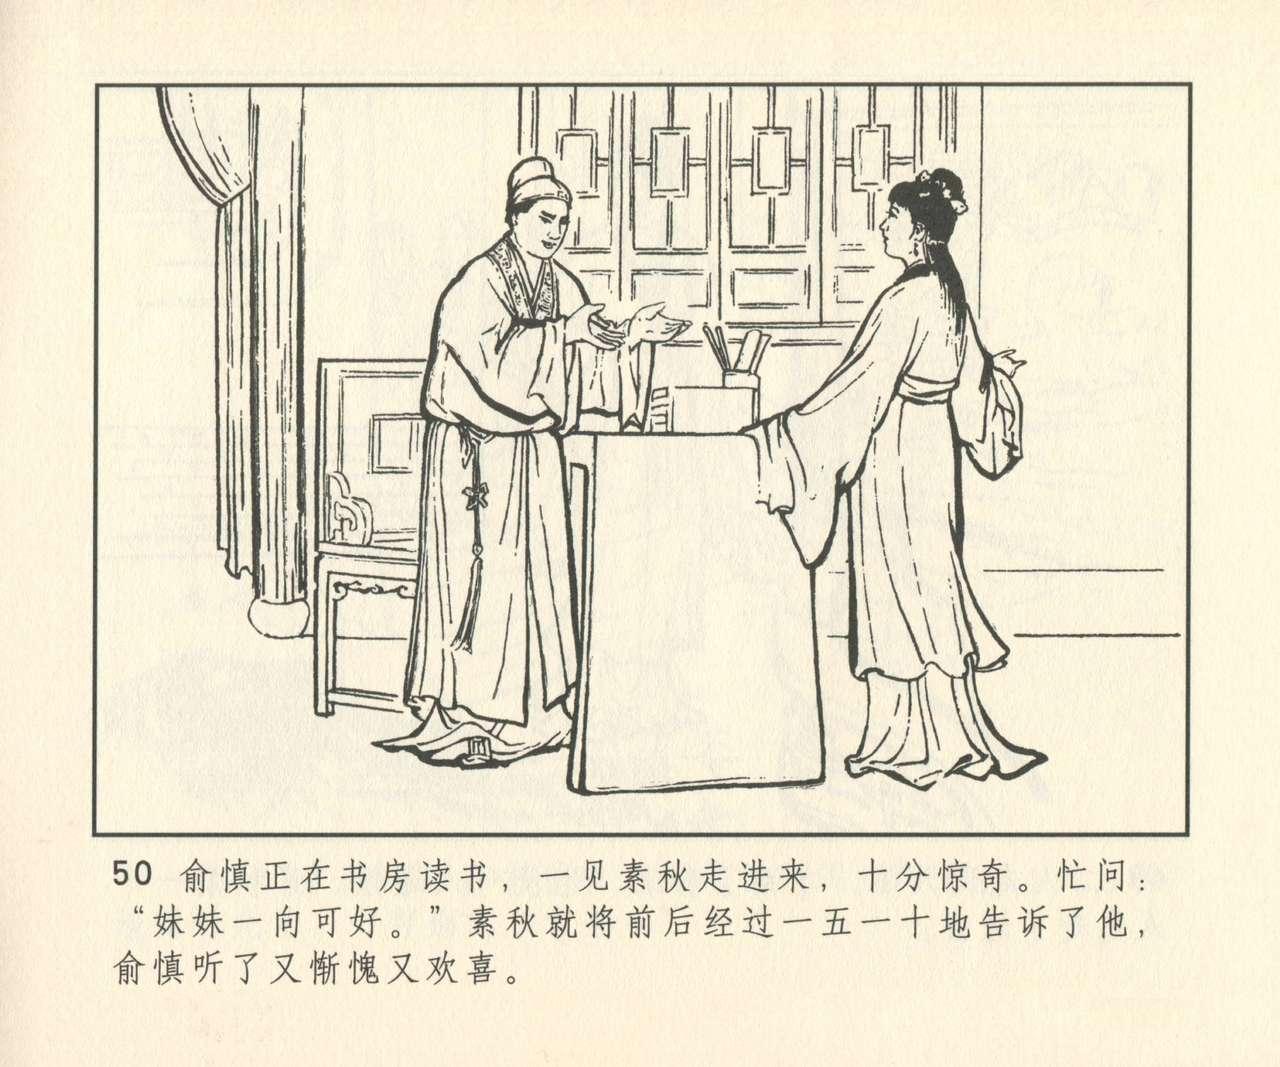 聊斋志异 张玮等绘 天津人民美术出版社 卷二十一 ~ 三十 330